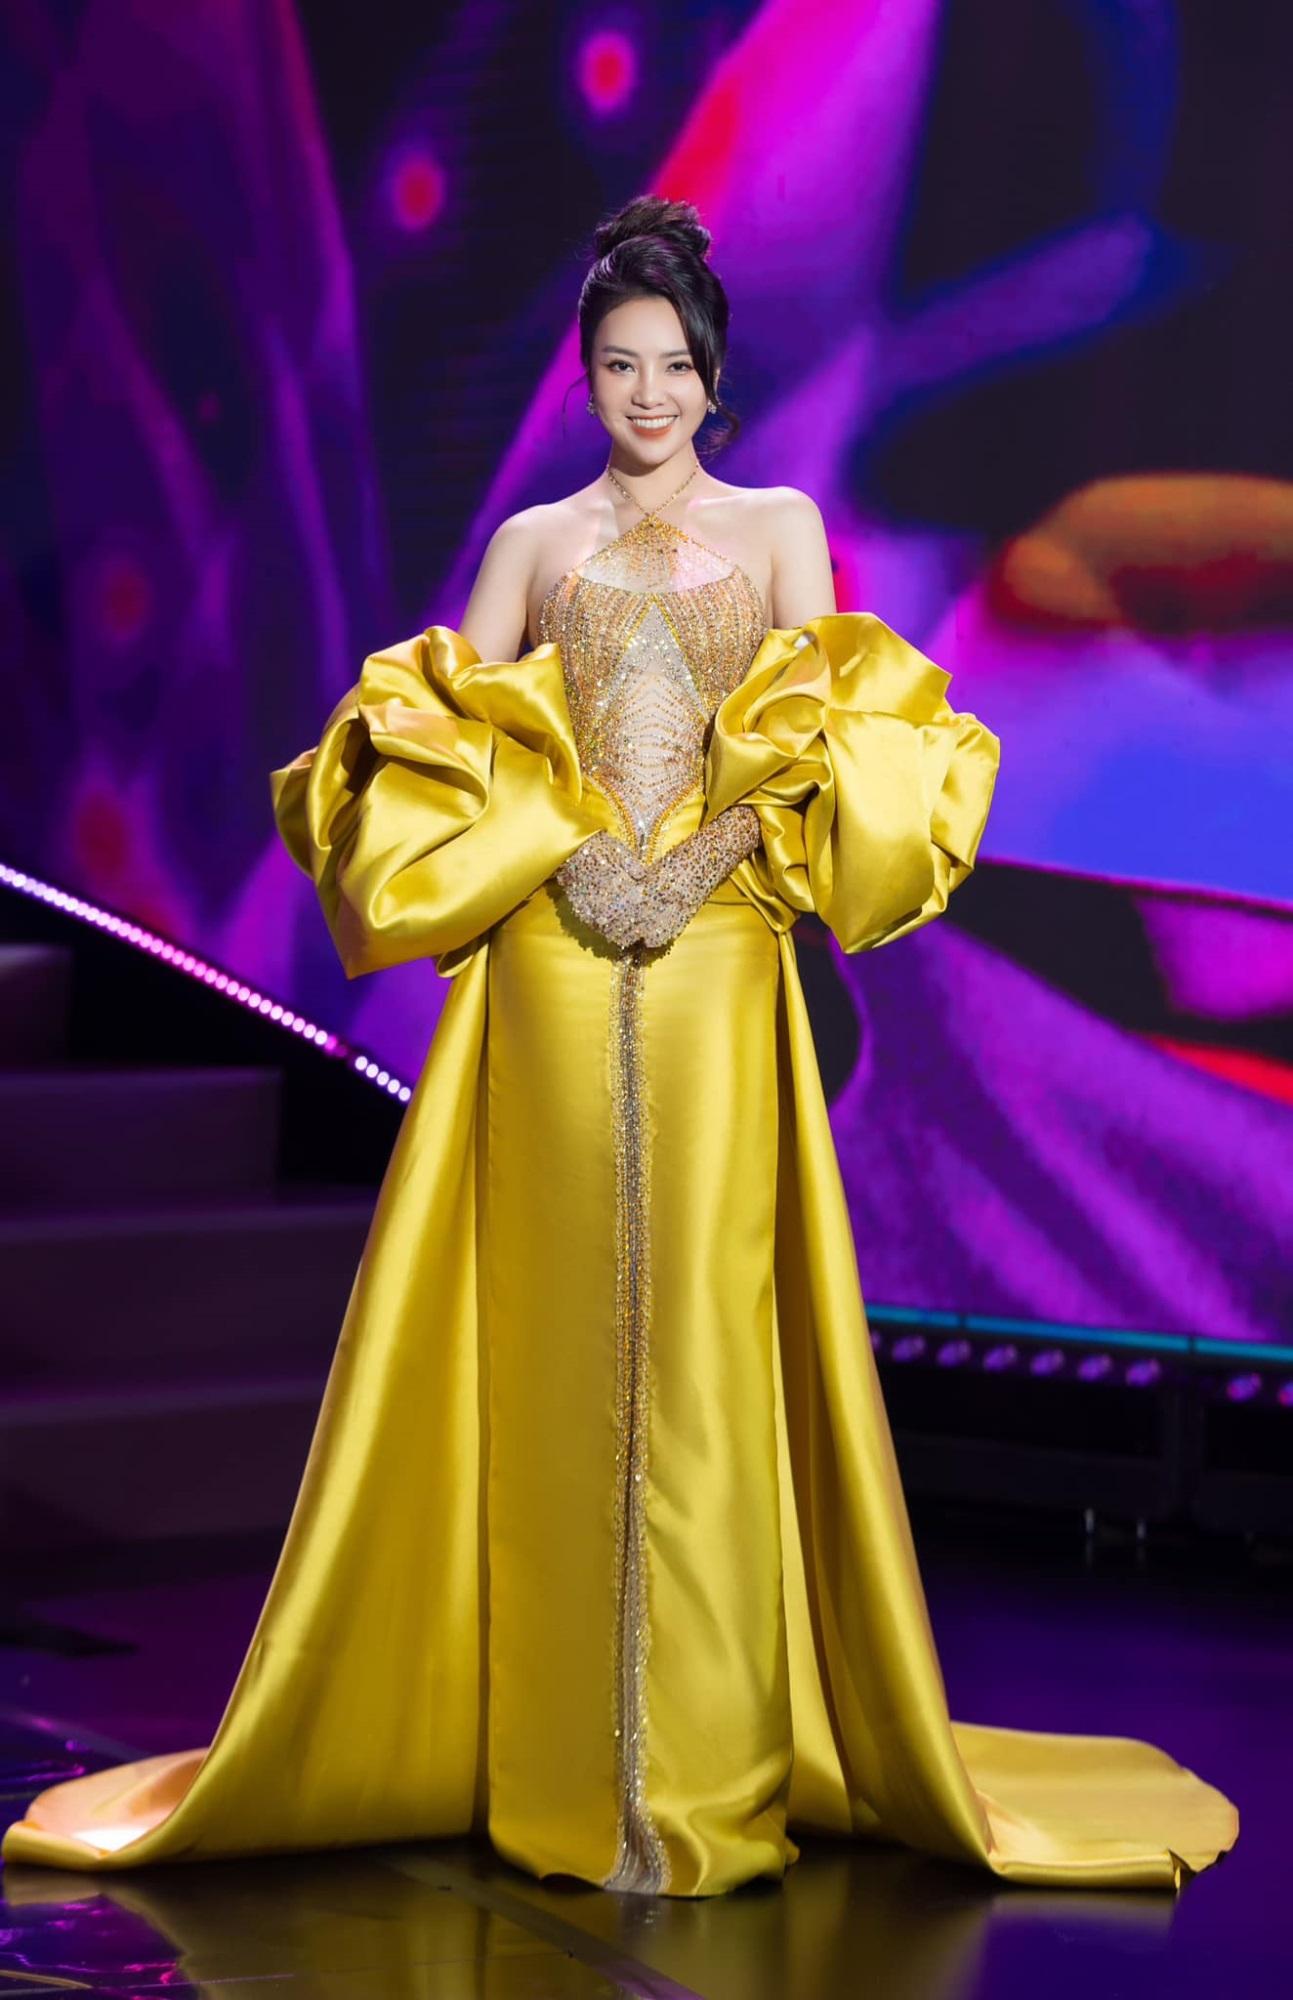 Nhan sắc cực phẩm Á hậu Thụy Vân, nữ MC sành điệu bậc nhất VTV, từng suýt chạm vương miện hoa hậu-8